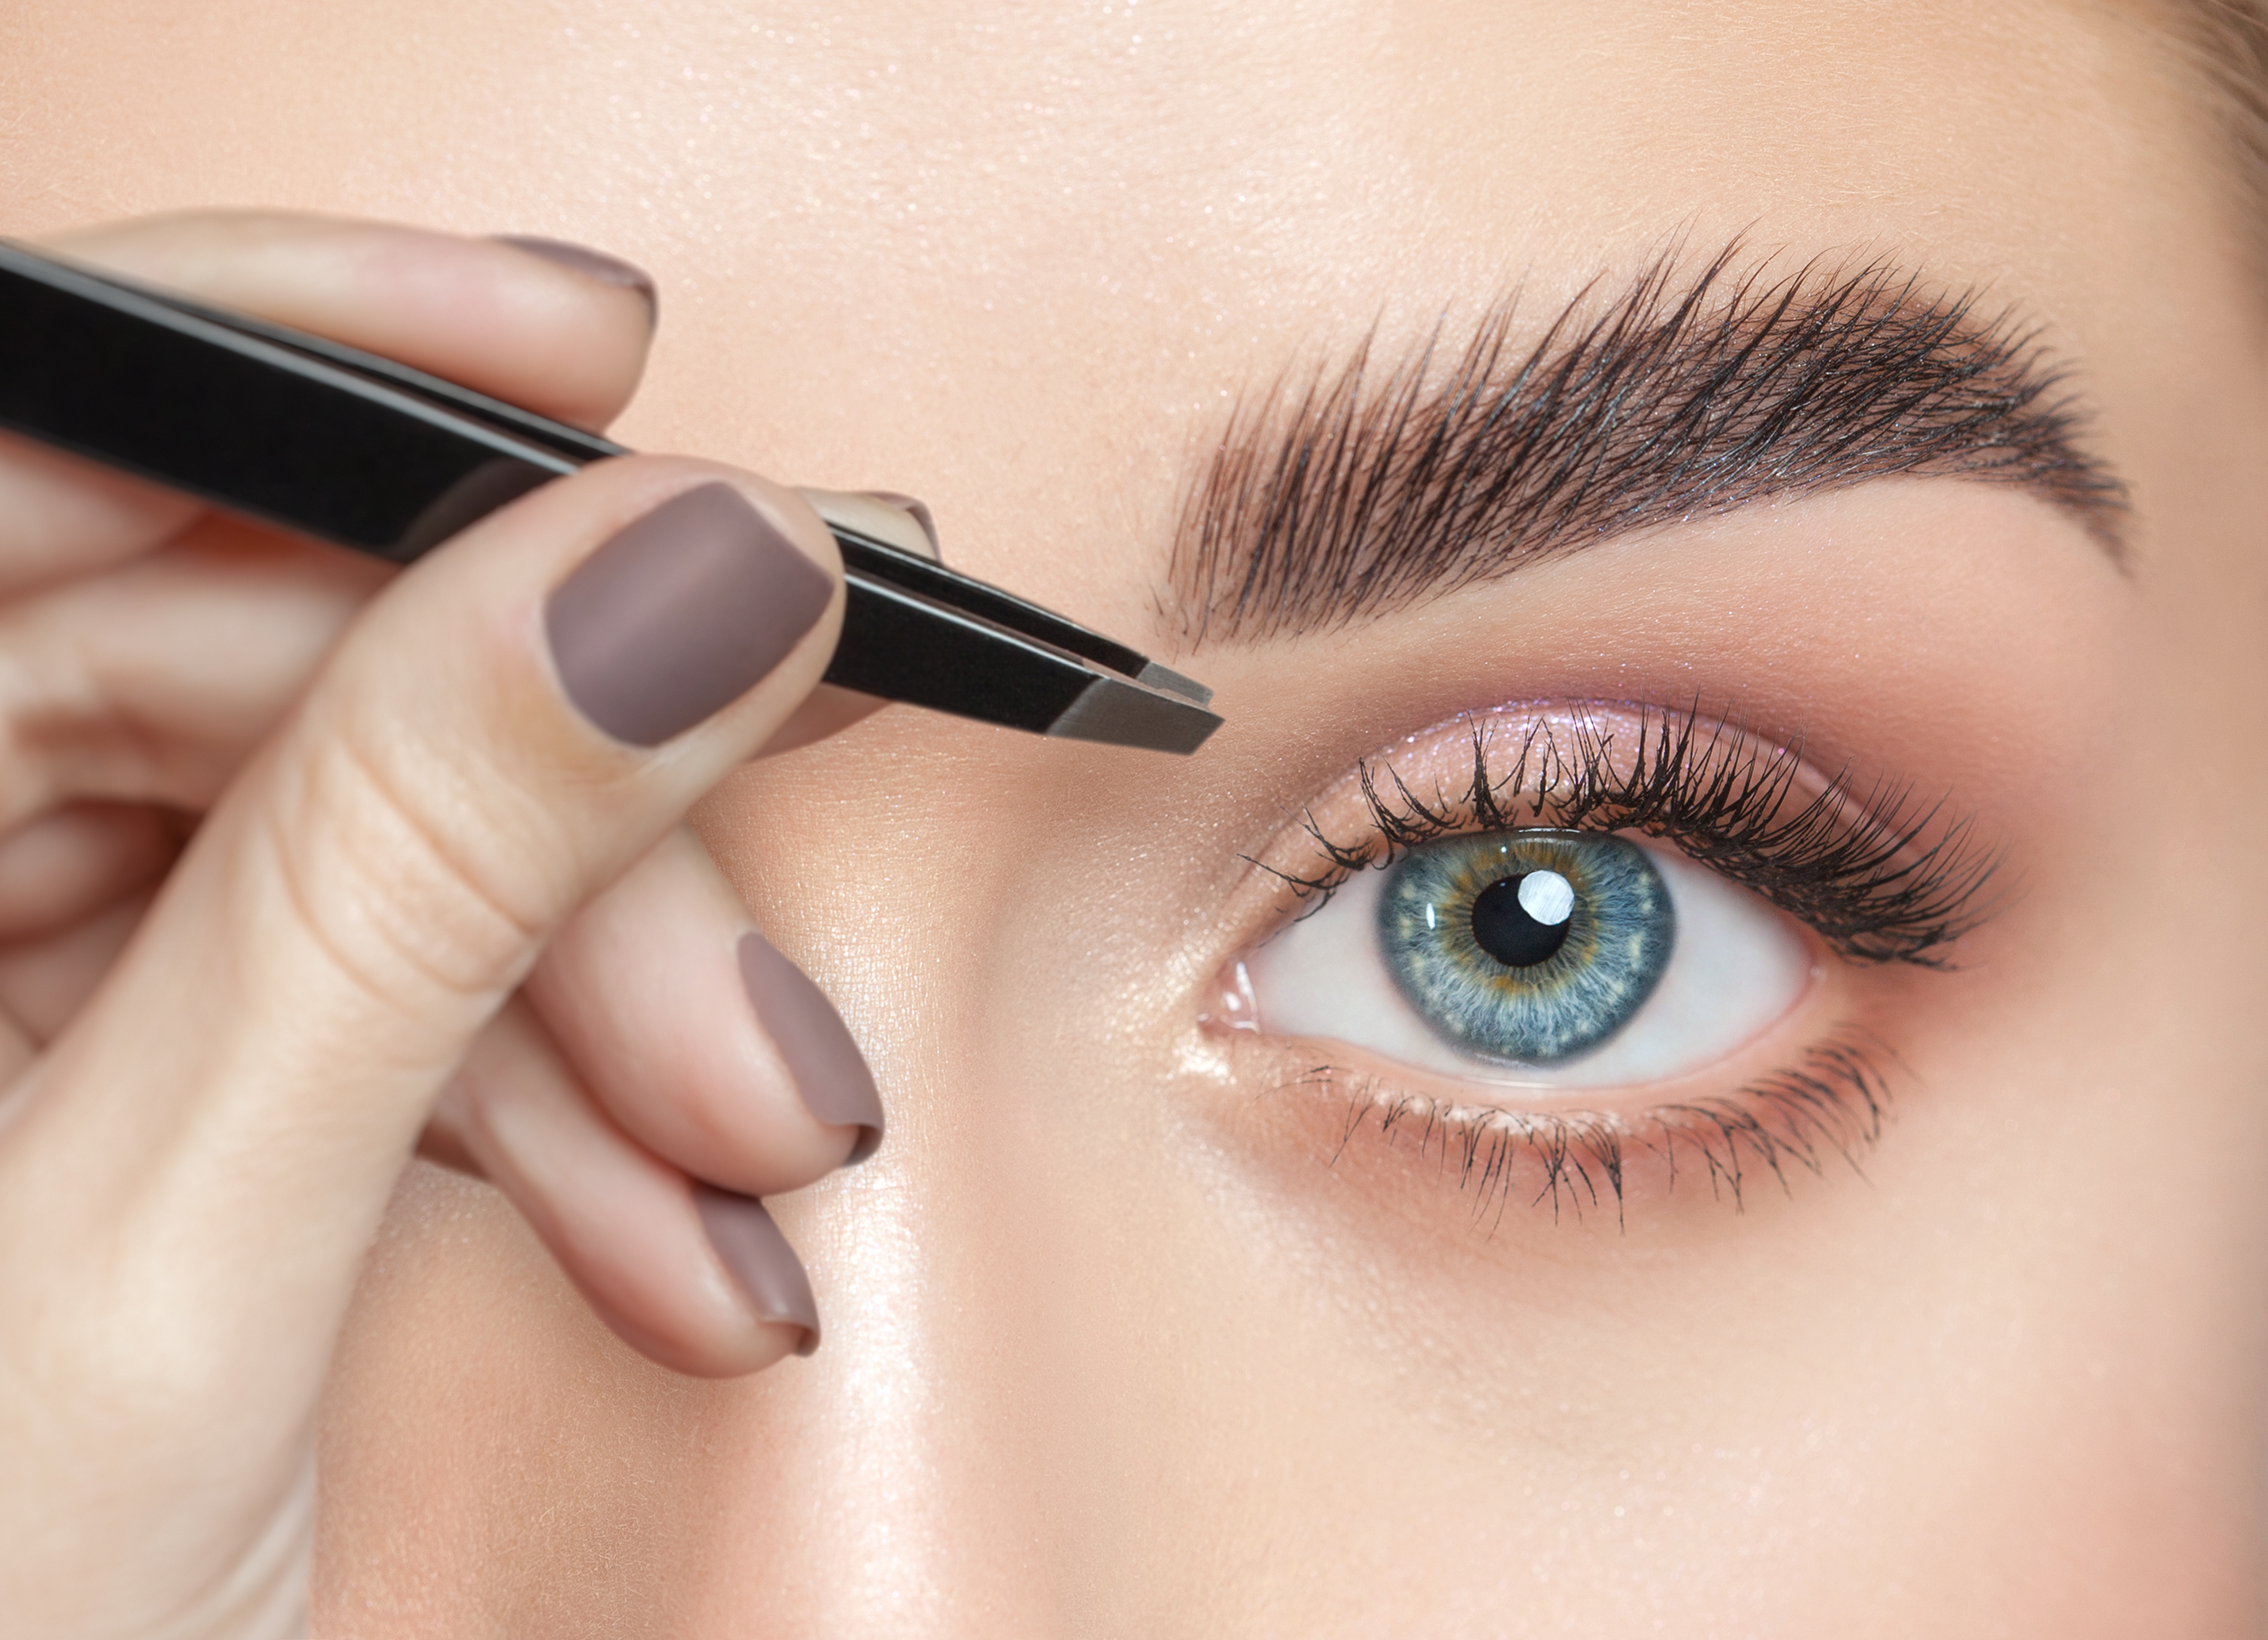 Femme s'épilant les sourcils | Source : Shutterstock